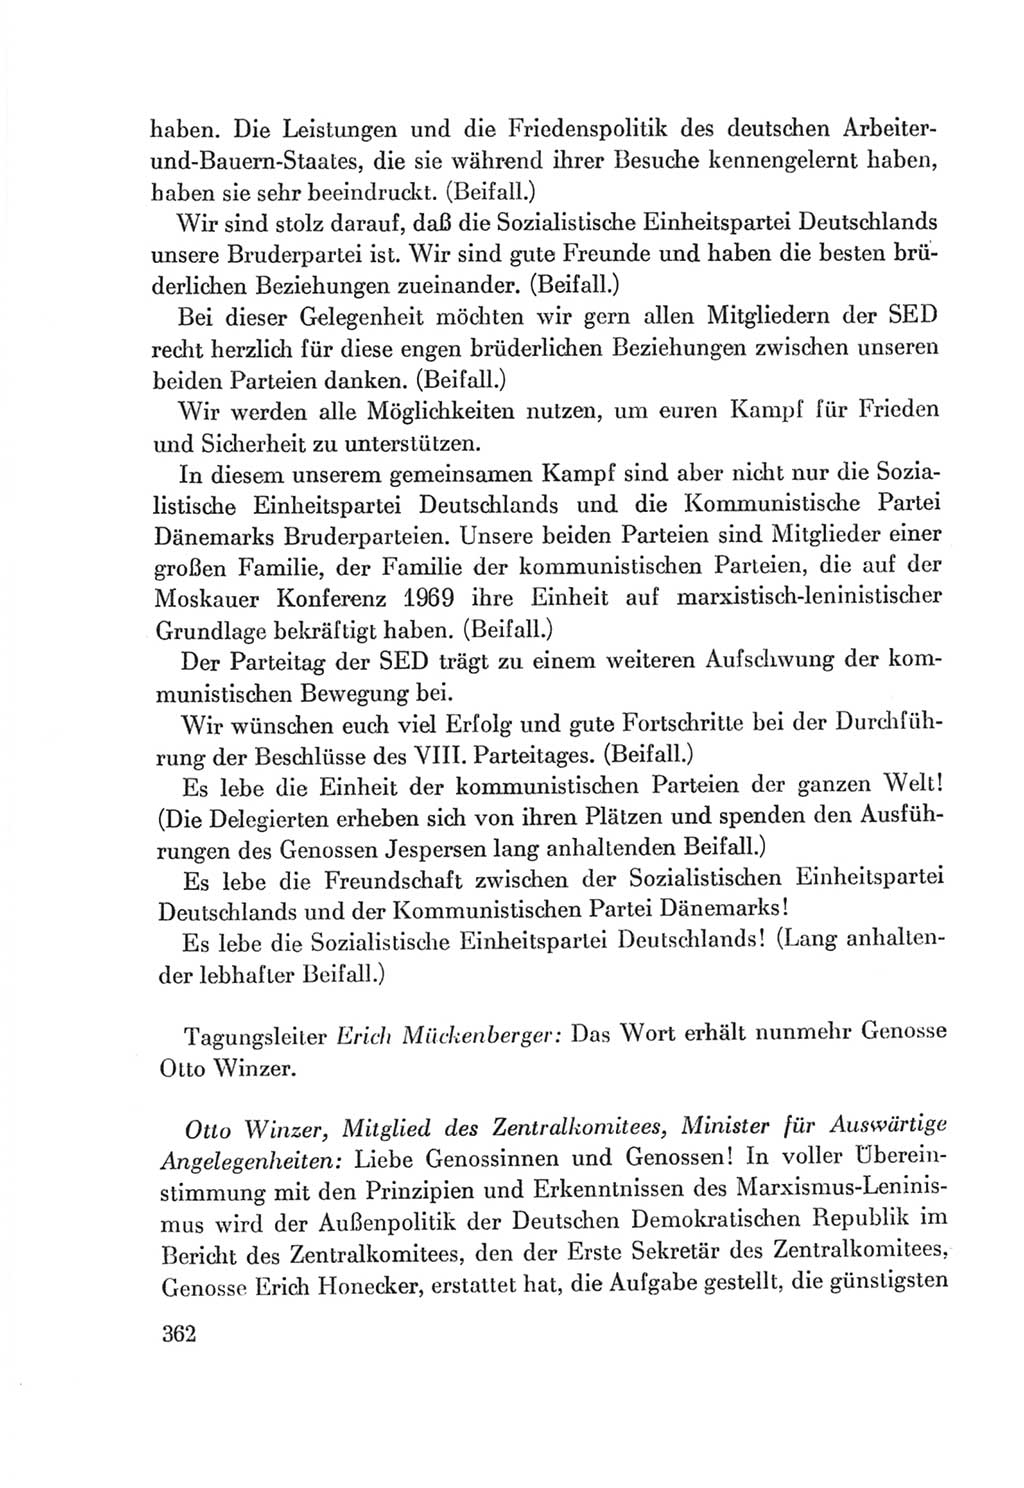 Protokoll der Verhandlungen des Ⅷ. Parteitages der Sozialistischen Einheitspartei Deutschlands (SED) [Deutsche Demokratische Republik (DDR)] 1971, Band 1, Seite 362 (Prot. Verh. Ⅷ. PT SED DDR 1971, Bd. 1, S. 362)